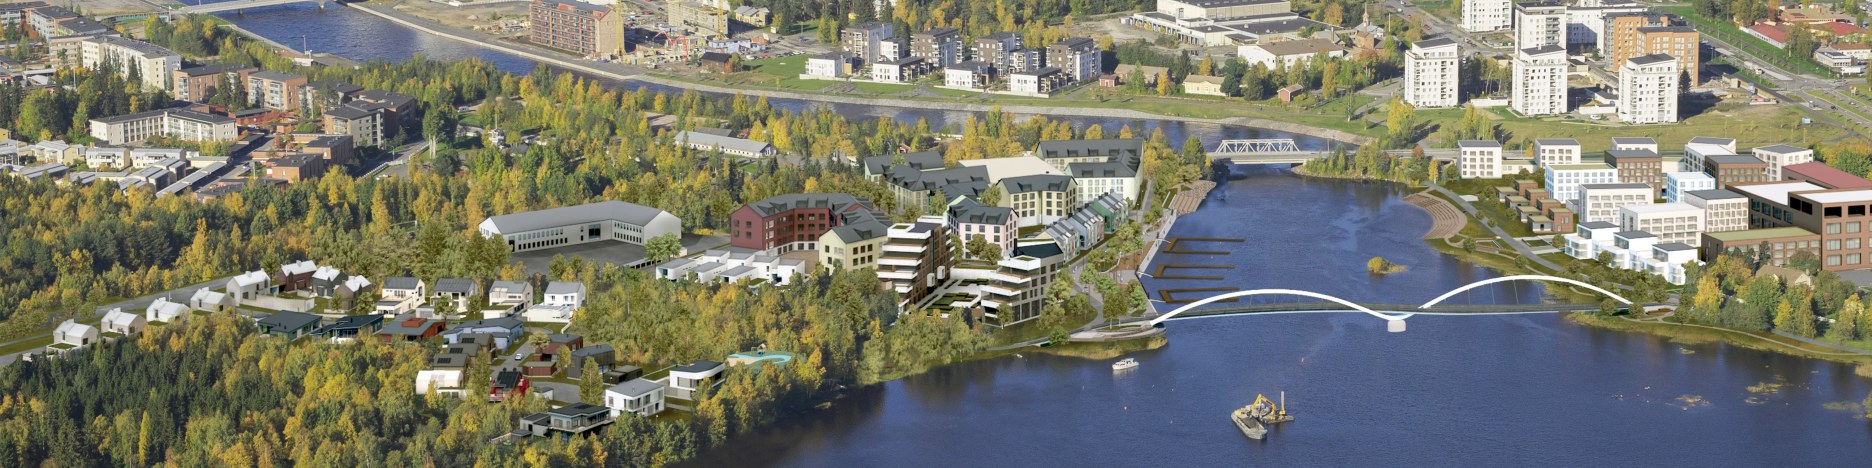 Asuntomessualue sijaitsee Oulujoen suistossa, ilmakuva alueesta.